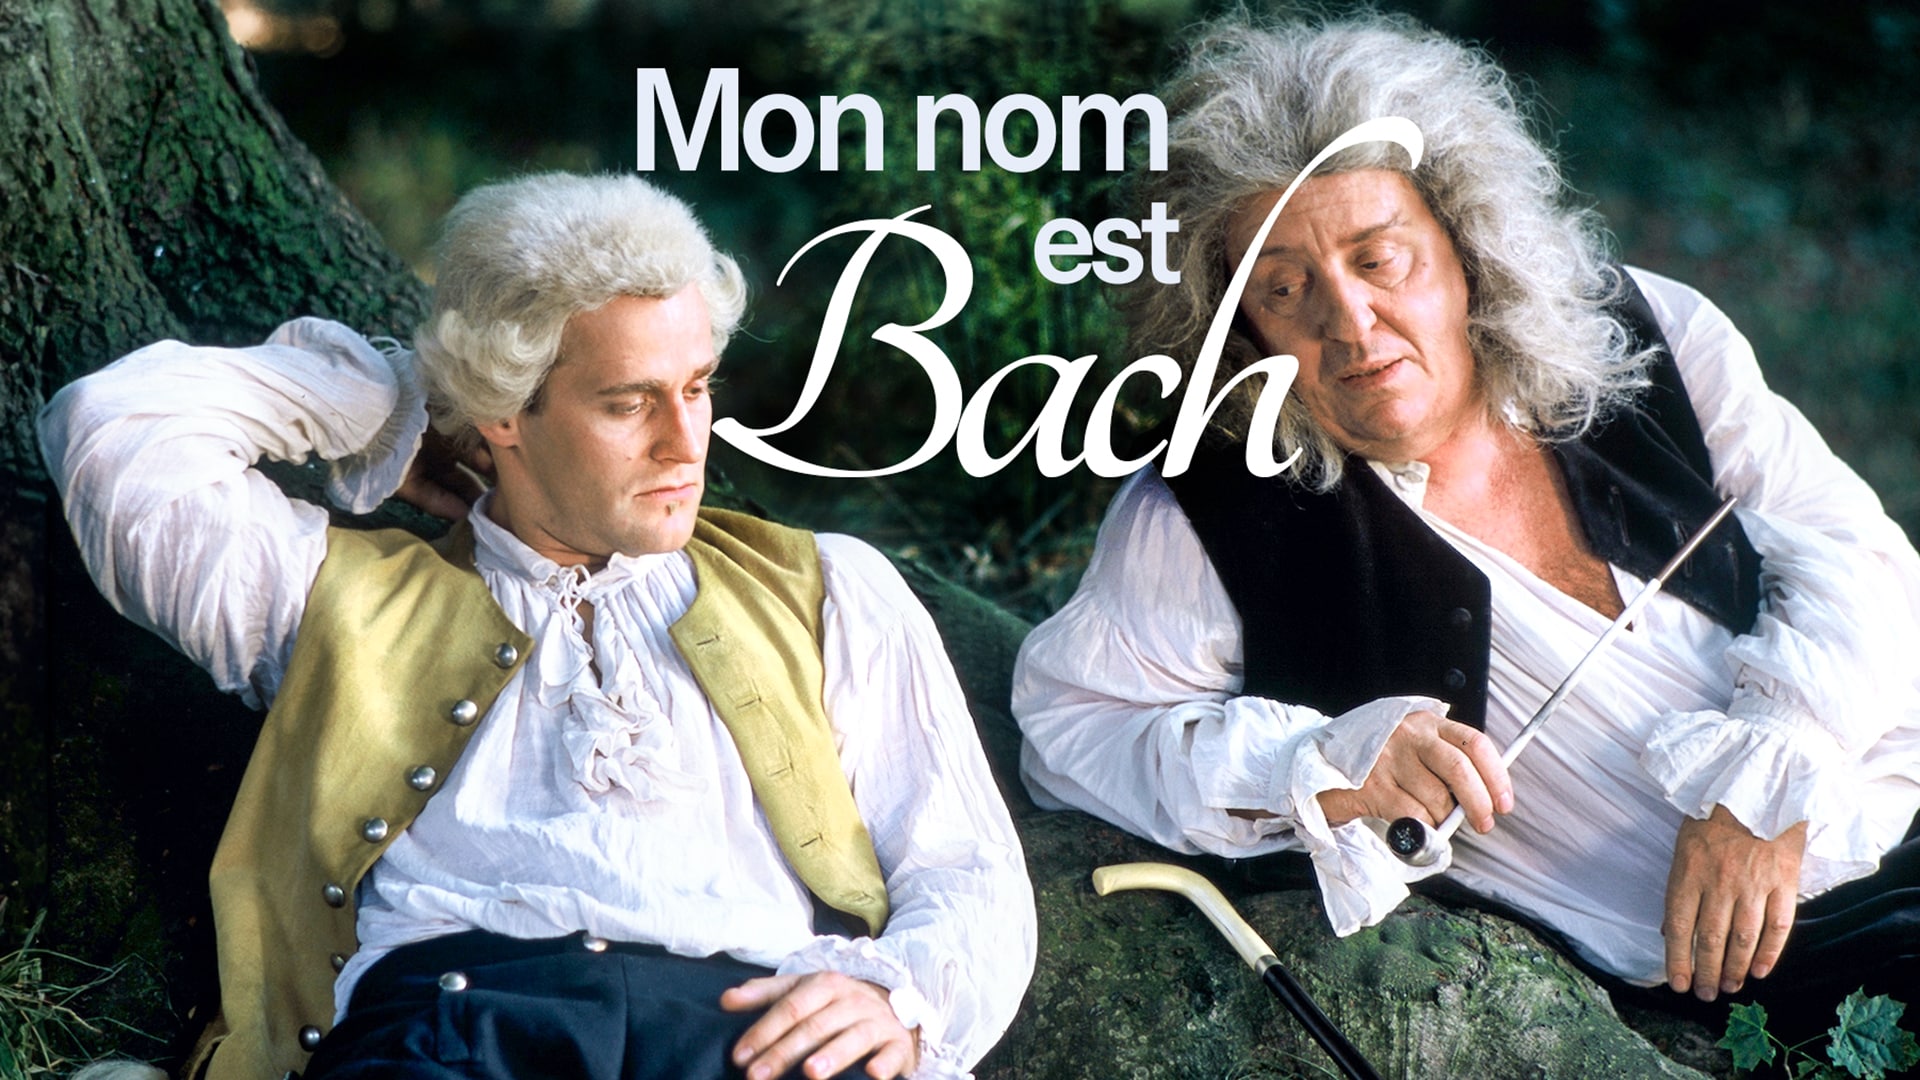 Mon nom est Bach